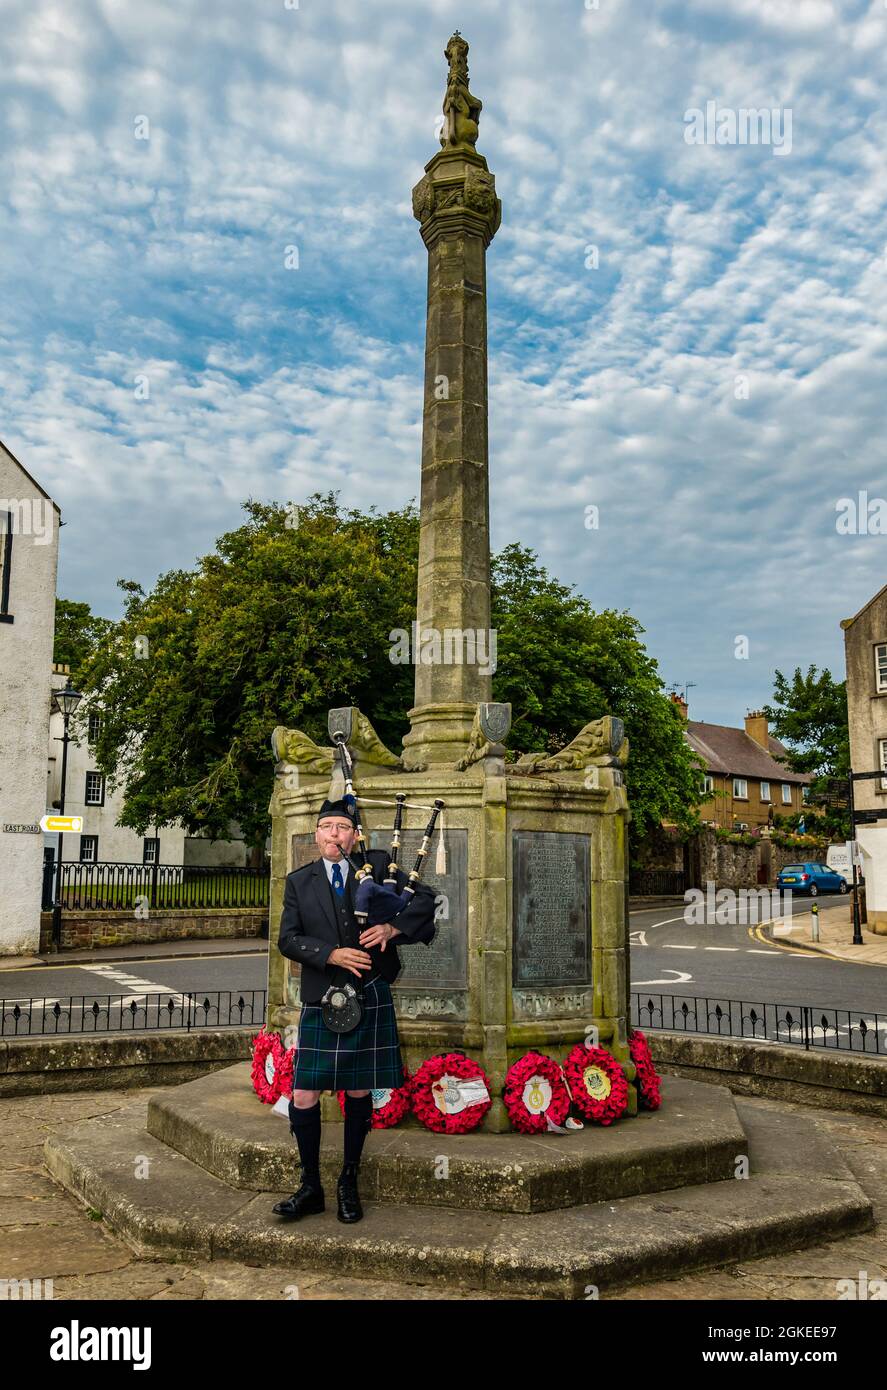 Ein Pfeifer spielt Dudelsäcke am Kriegsdenkmal zum Gedenken an den St. Valery Day, als schottische Soldaten im Zweiten Weltkrieg, North Berwick, Schottland, Großbritannien, gefangen genommen wurden Stockfoto